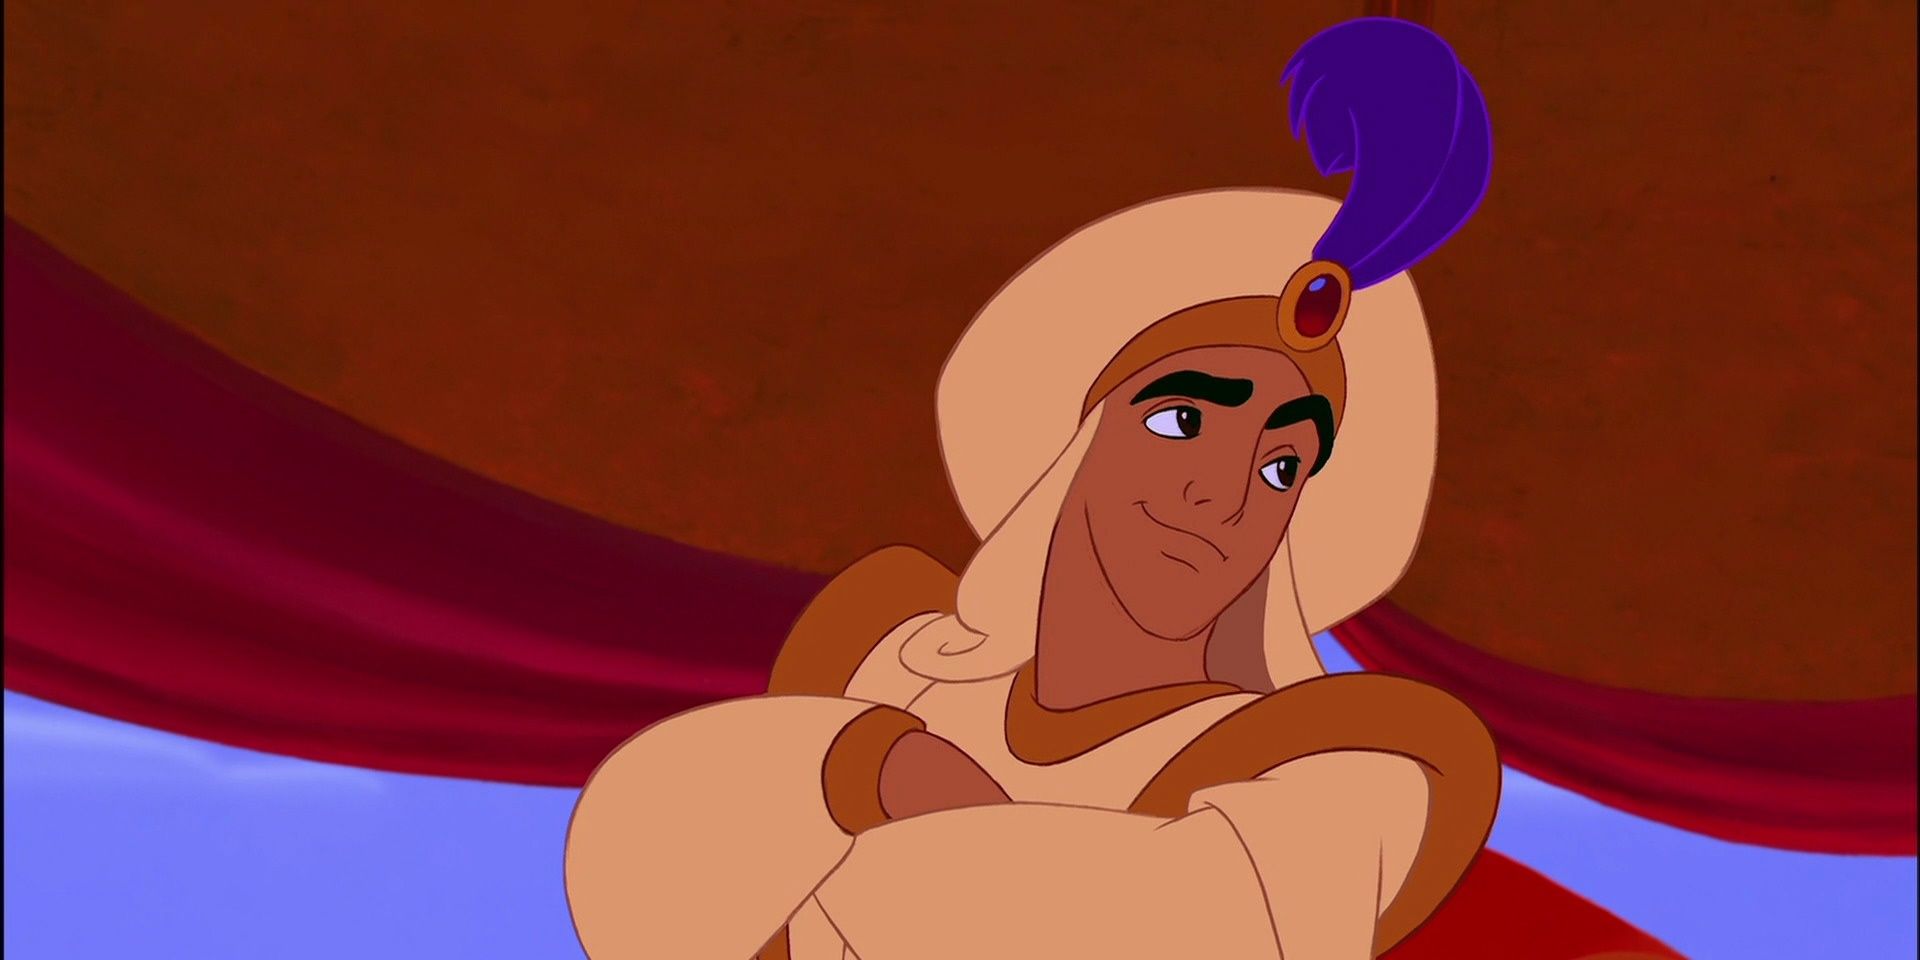 Aladdin rides in as Prince Ali